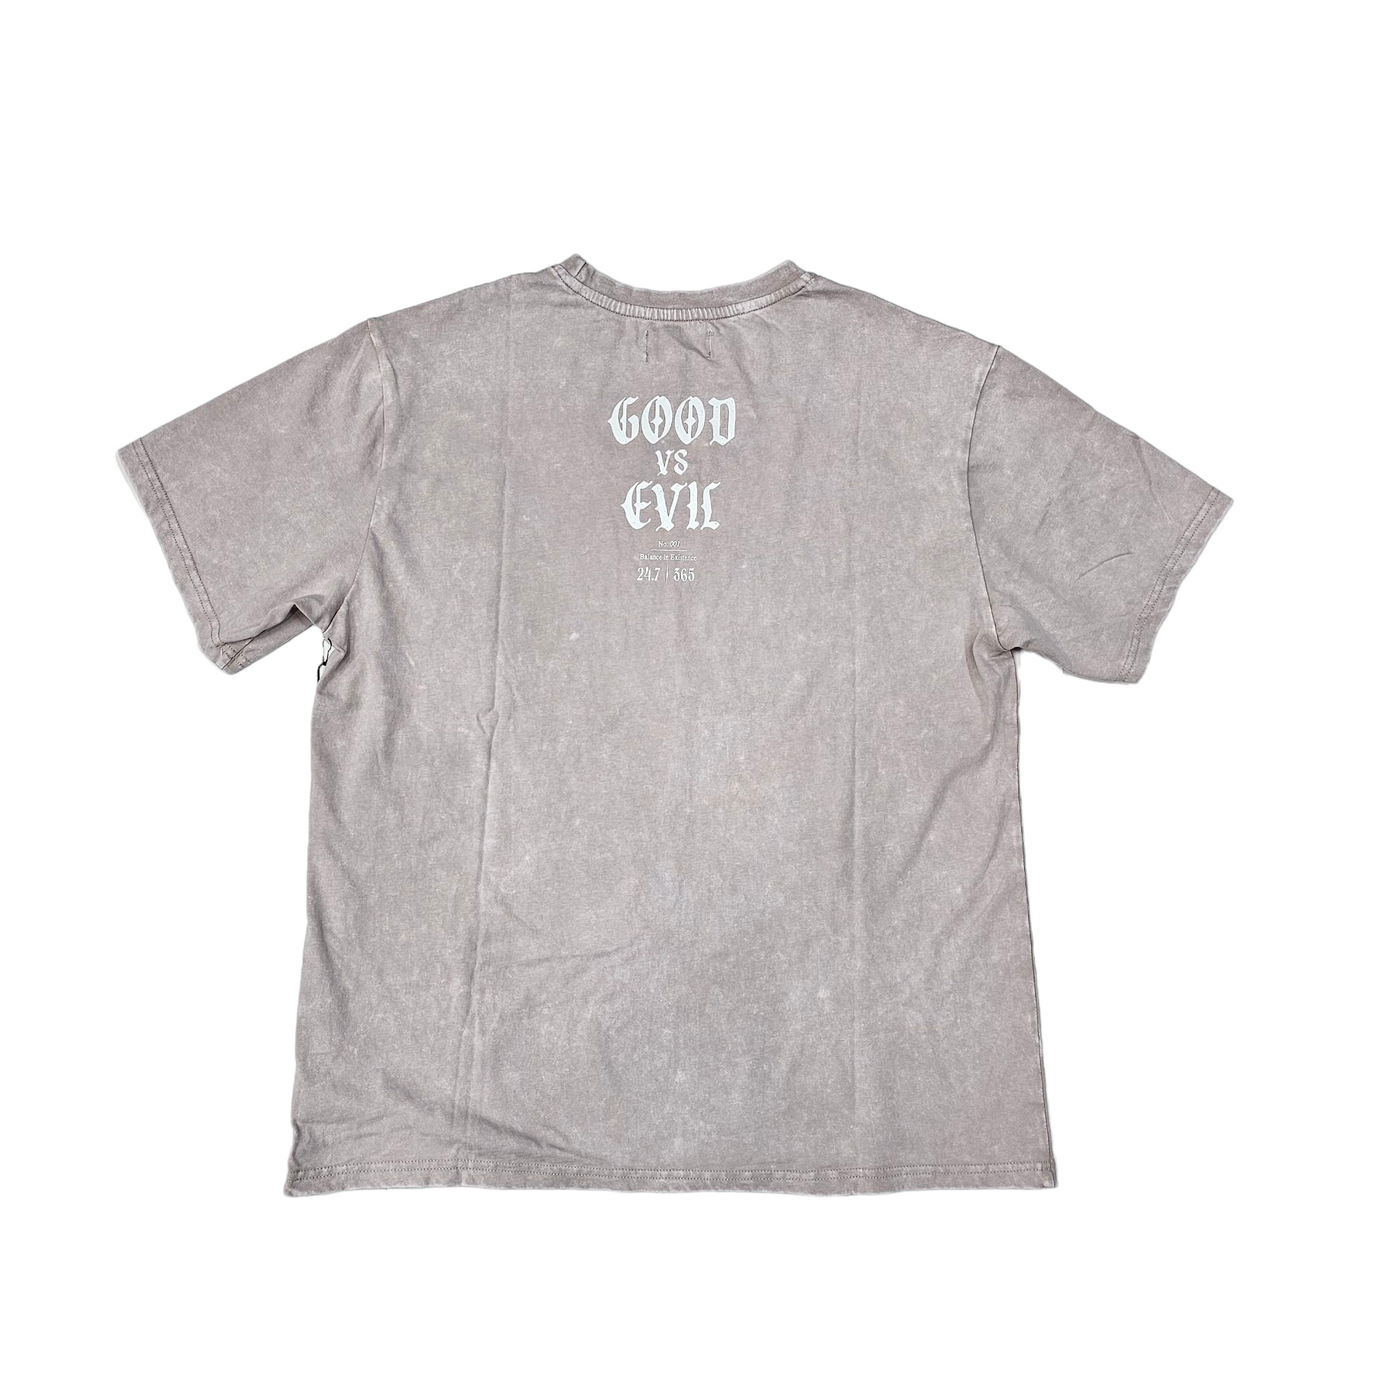 Highly Undrtd Good VS Evil T-Shirt Vintage Wash US4114W